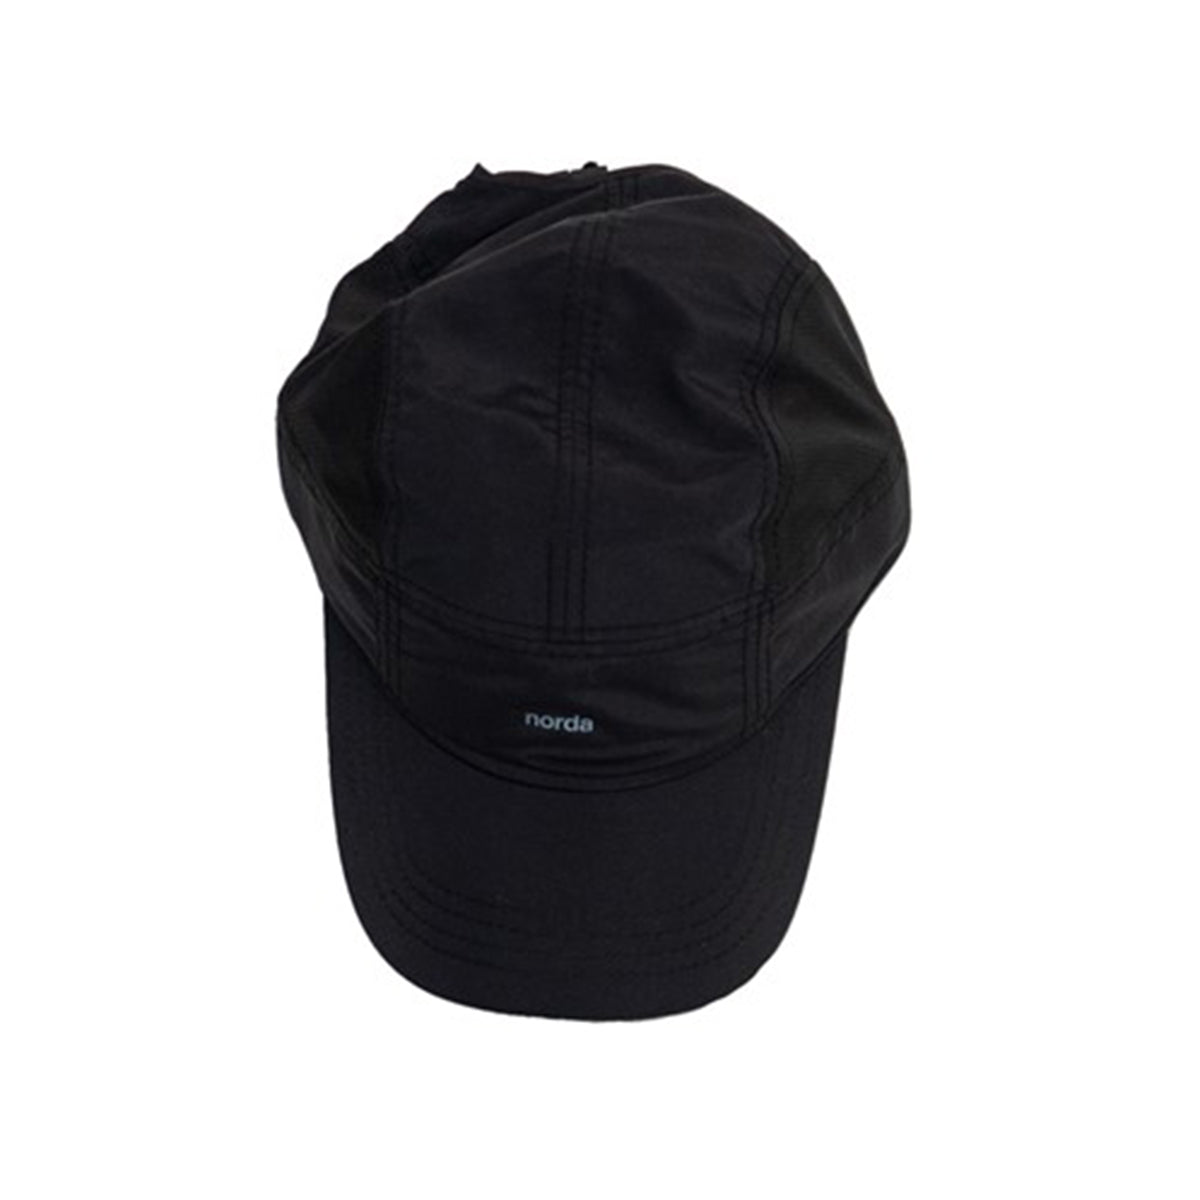 NA23SS-003 NORDA SHIELD CAP